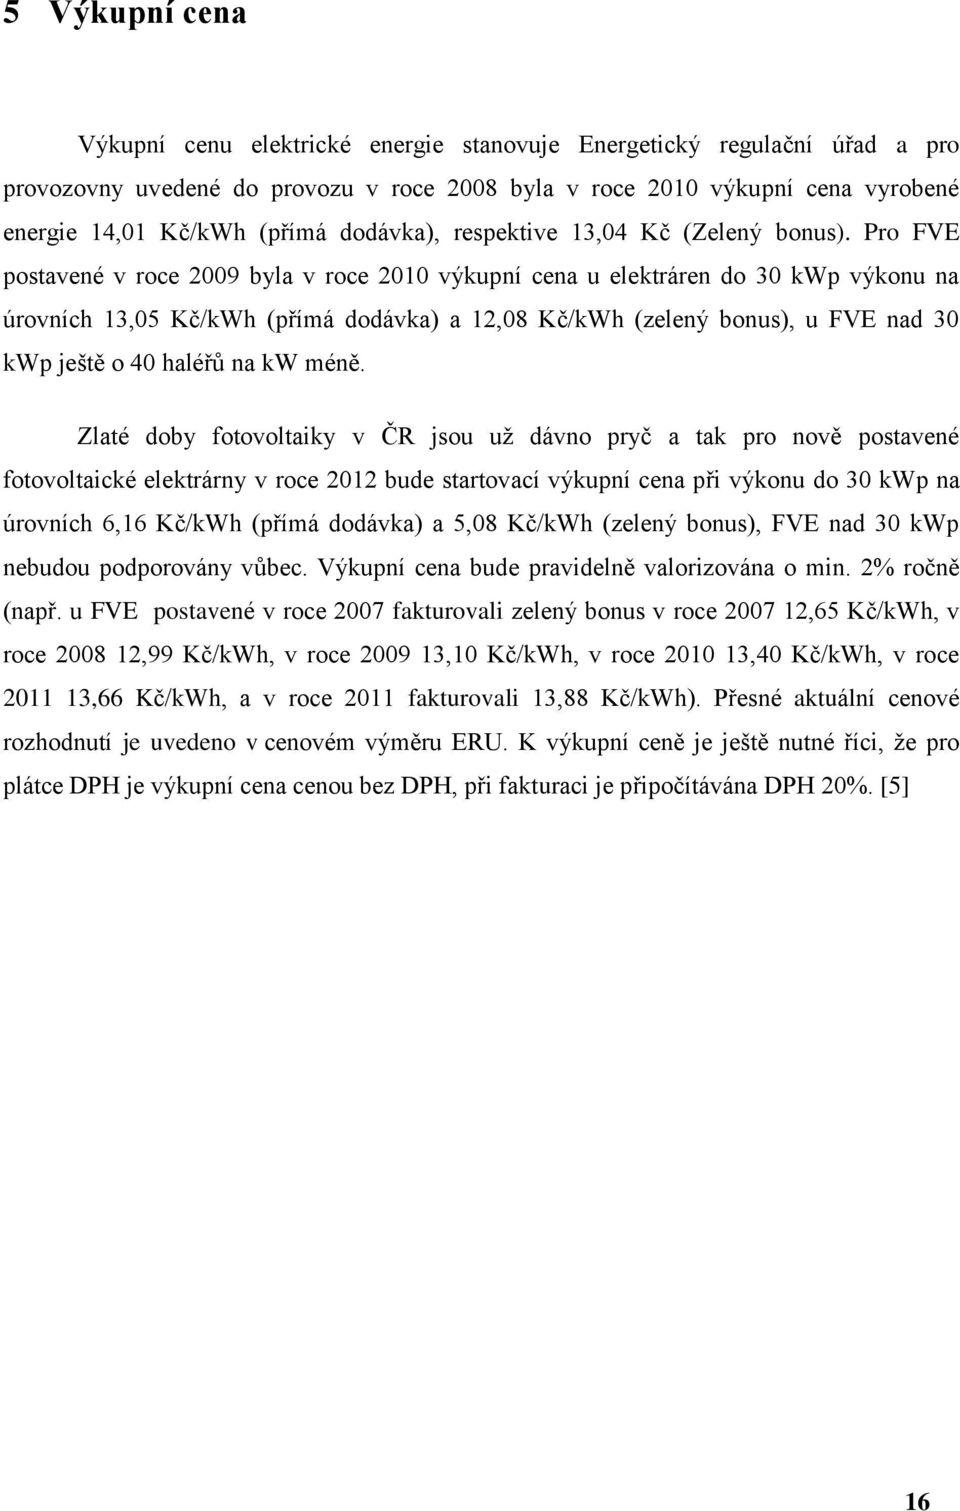 Pro FVE postavené v roce 2009 byla v roce 2010 výkupní cena u elektráren do 30 kwp výkonu na úrovních 13,05 Kč/kWh (přímá dodávka) a 12,08 Kč/kWh (zelený bonus), u FVE nad 30 kwp ještě o 40 haléřů na